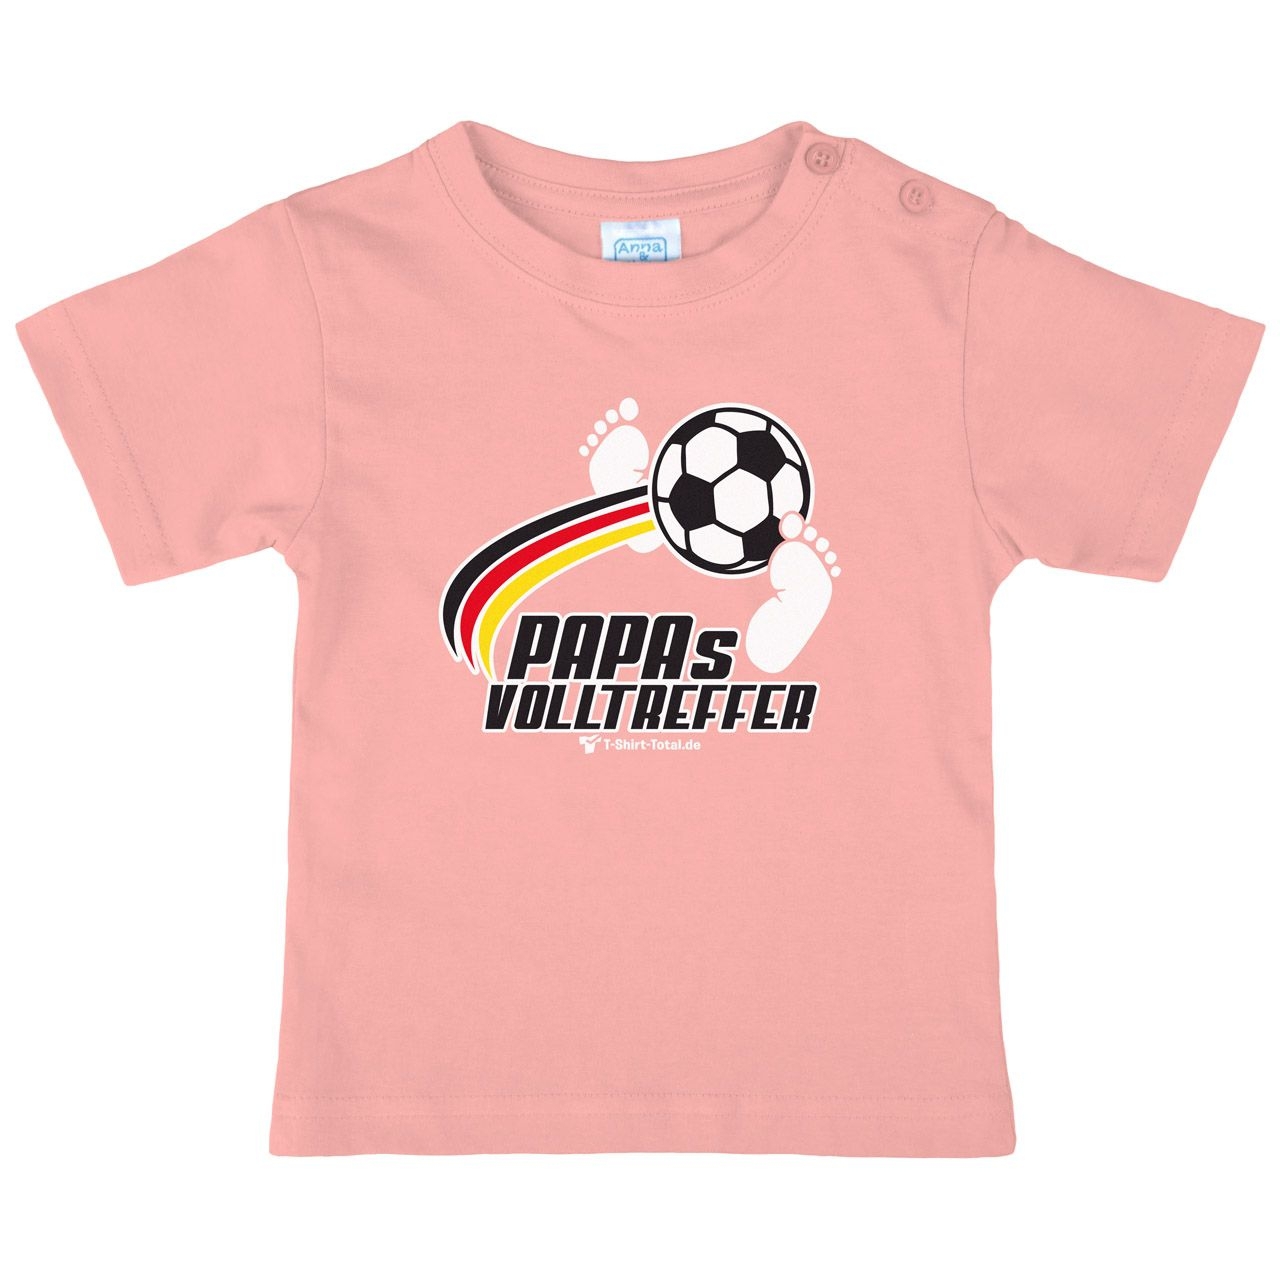 Papas Volltreffer Kinder T-Shirt rosa 56 / 62